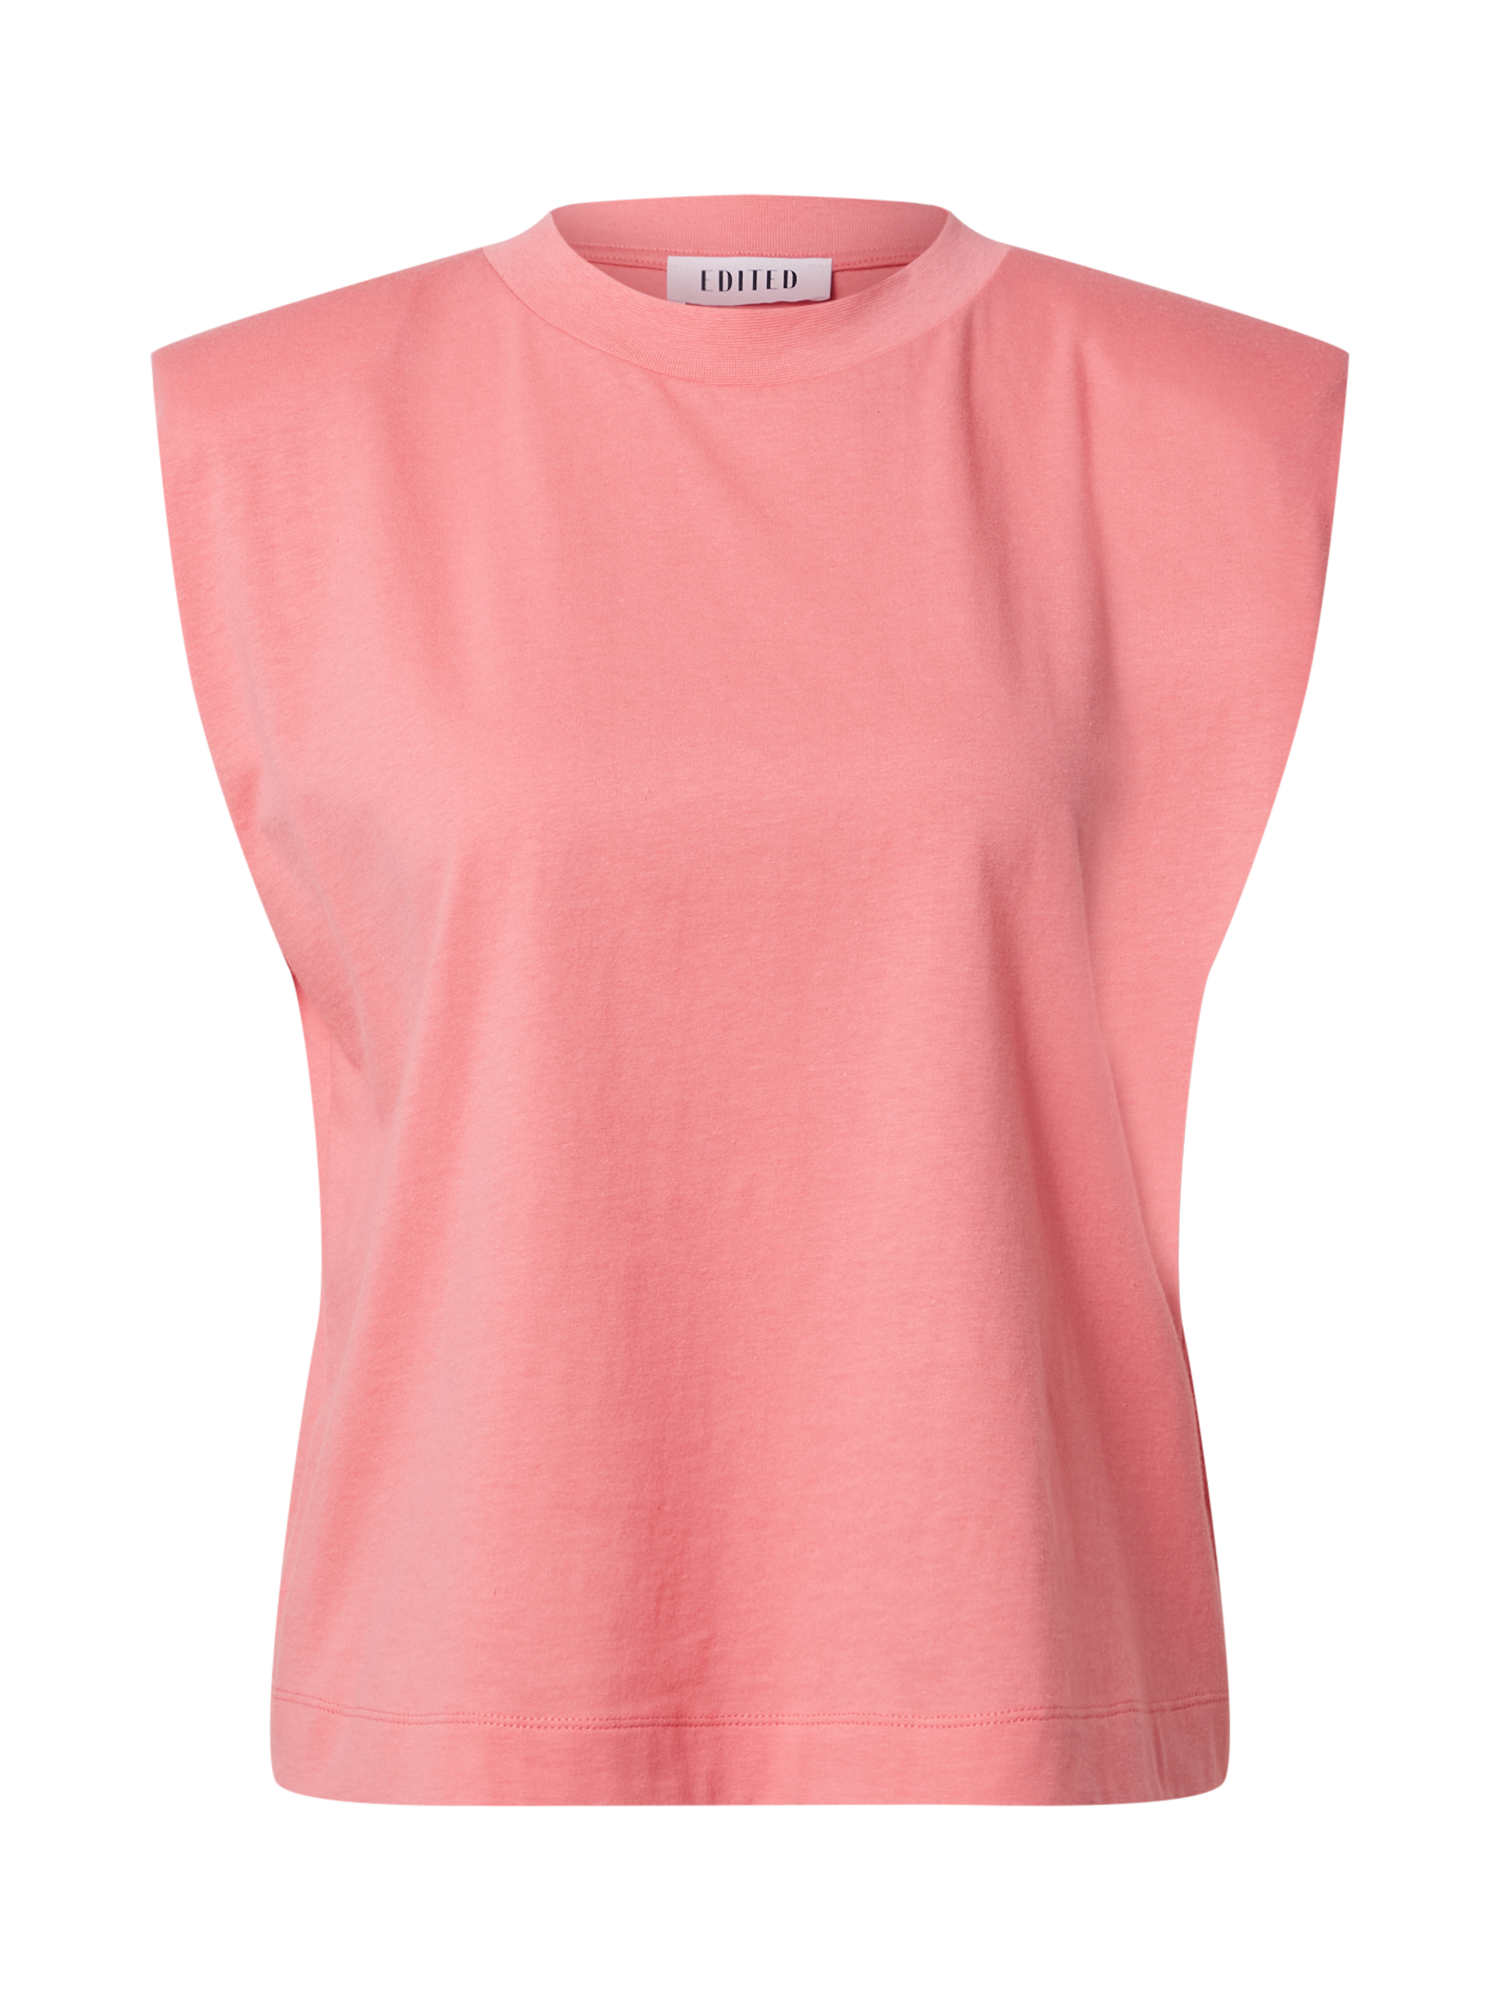 Kobiety Odzież EDITED Koszulka Elise w kolorze Różowym 